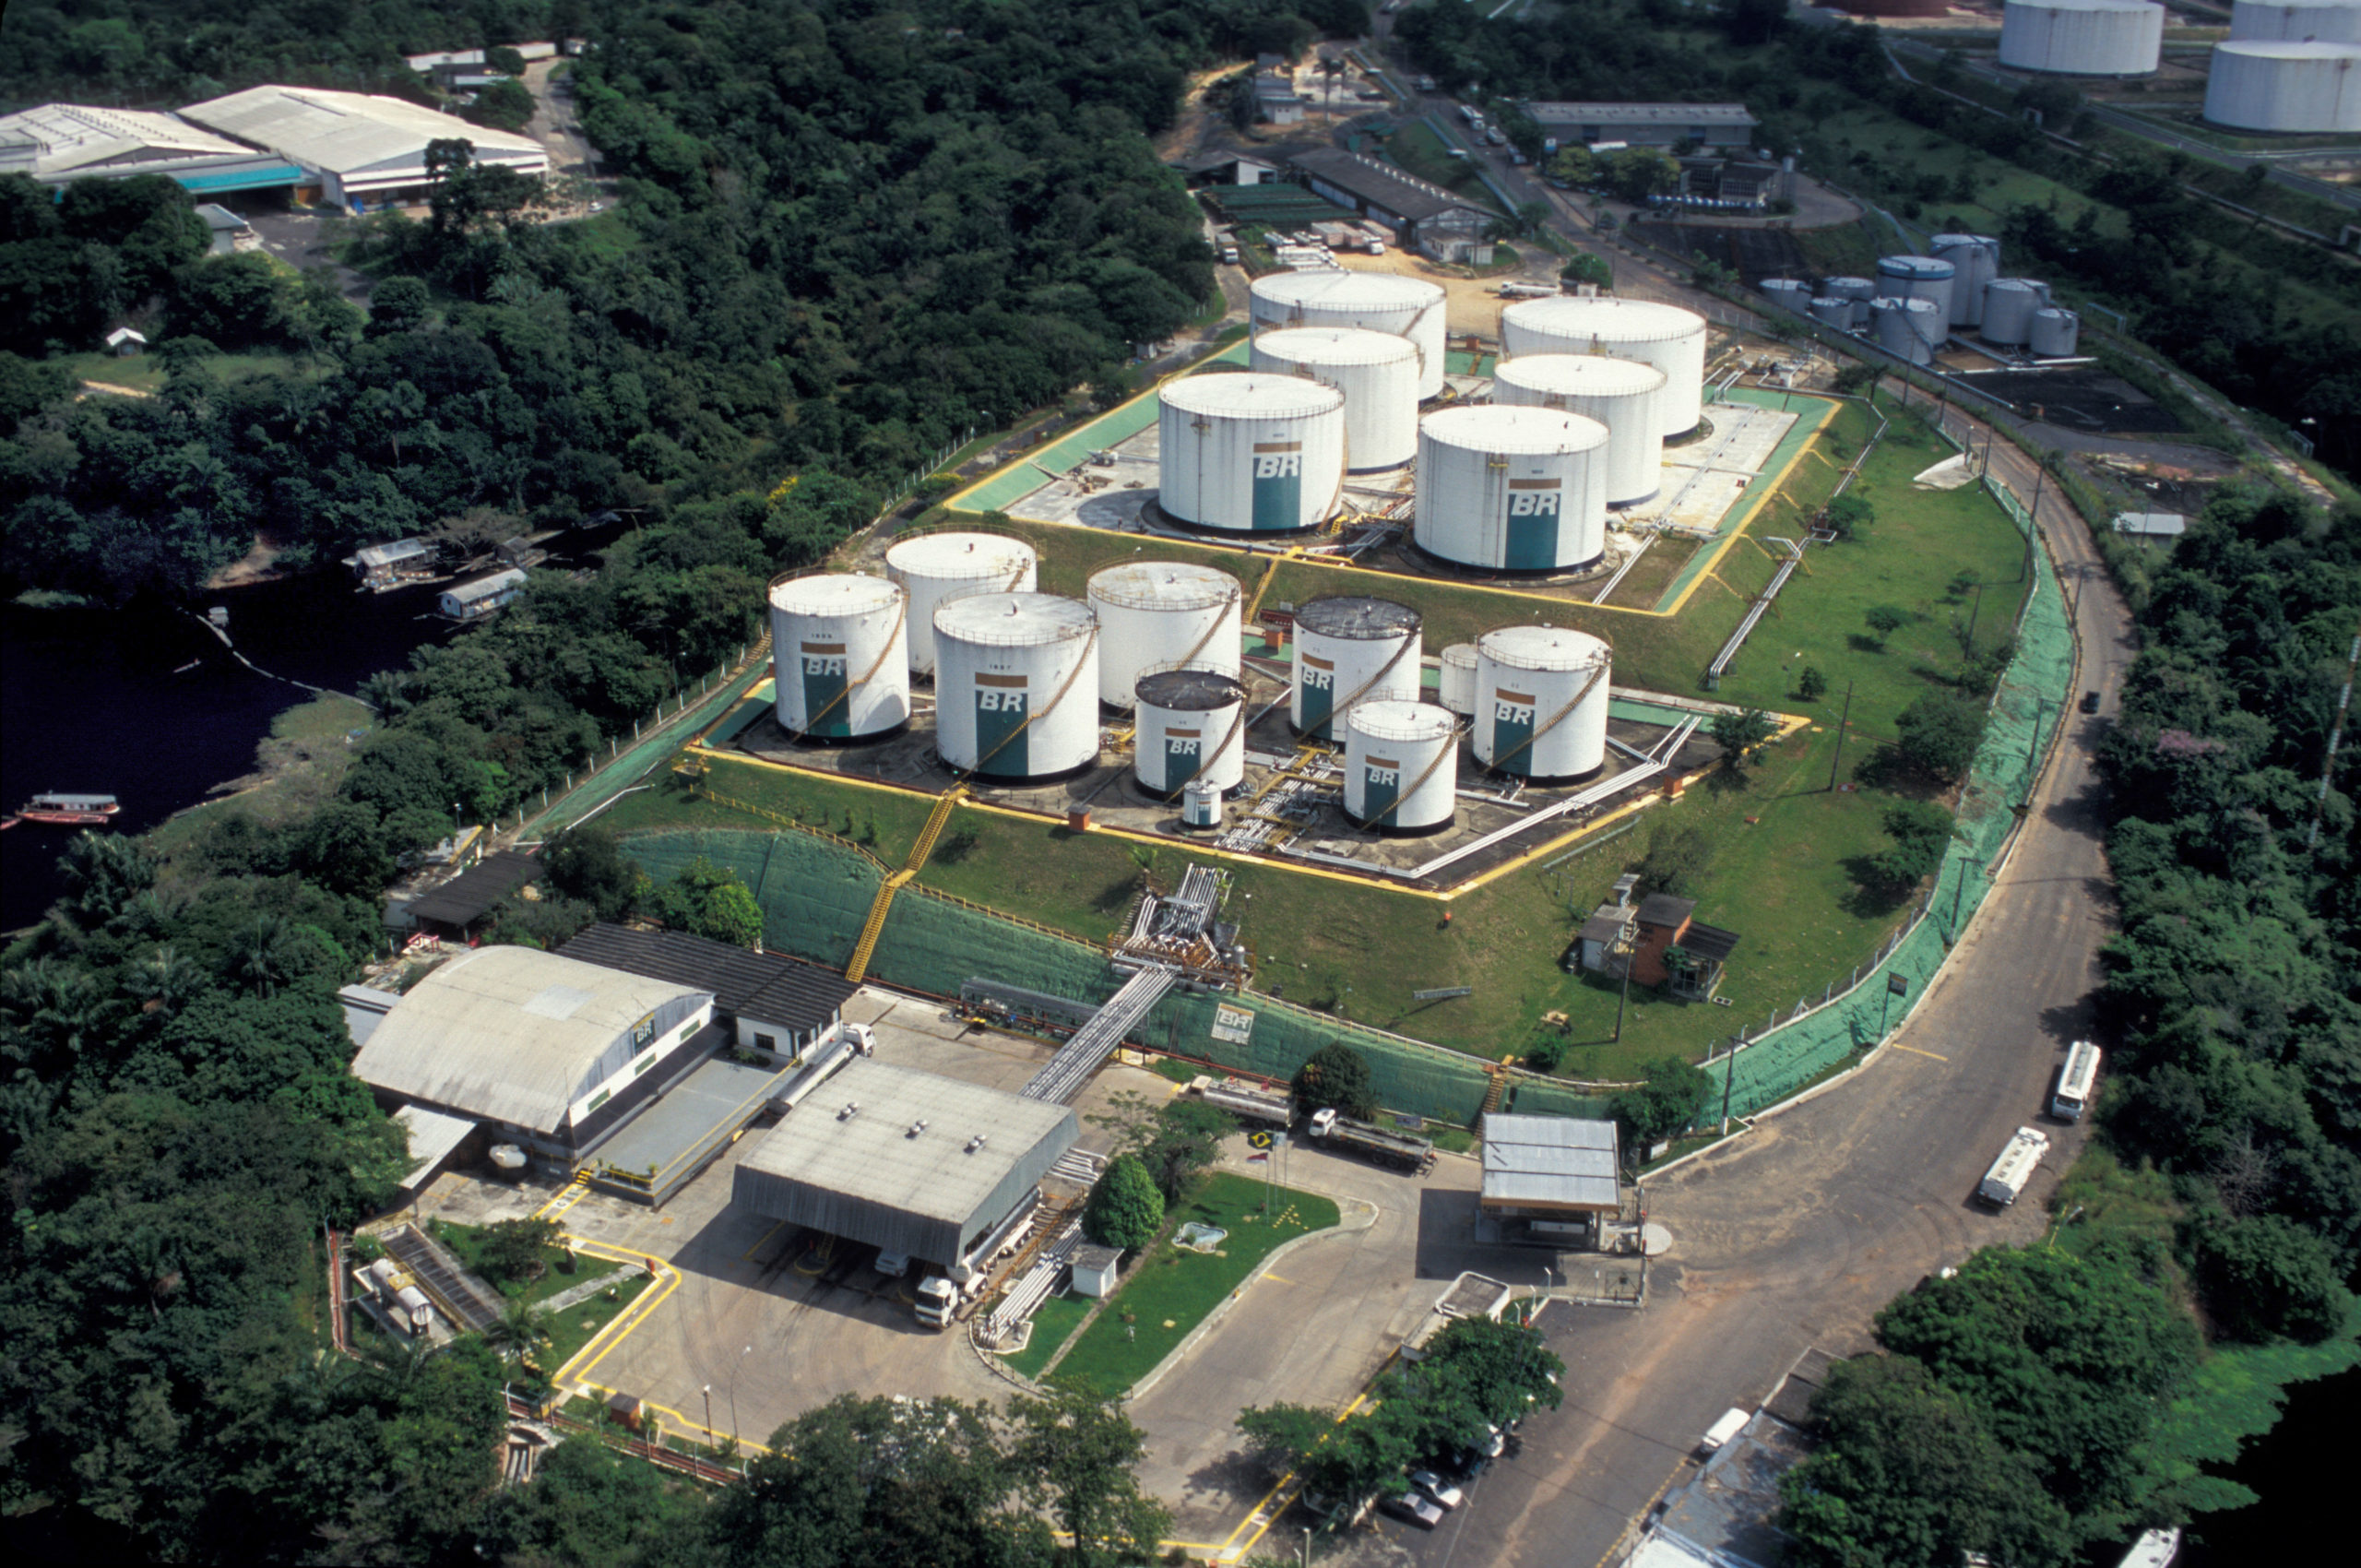 Venda da Reman entra na reta final. Na imagem, parque de refino da refinaria Isaac Sabbá, em Manaus (AM) (Foto: Juarez Cavalcanti/Agência Petrobras)